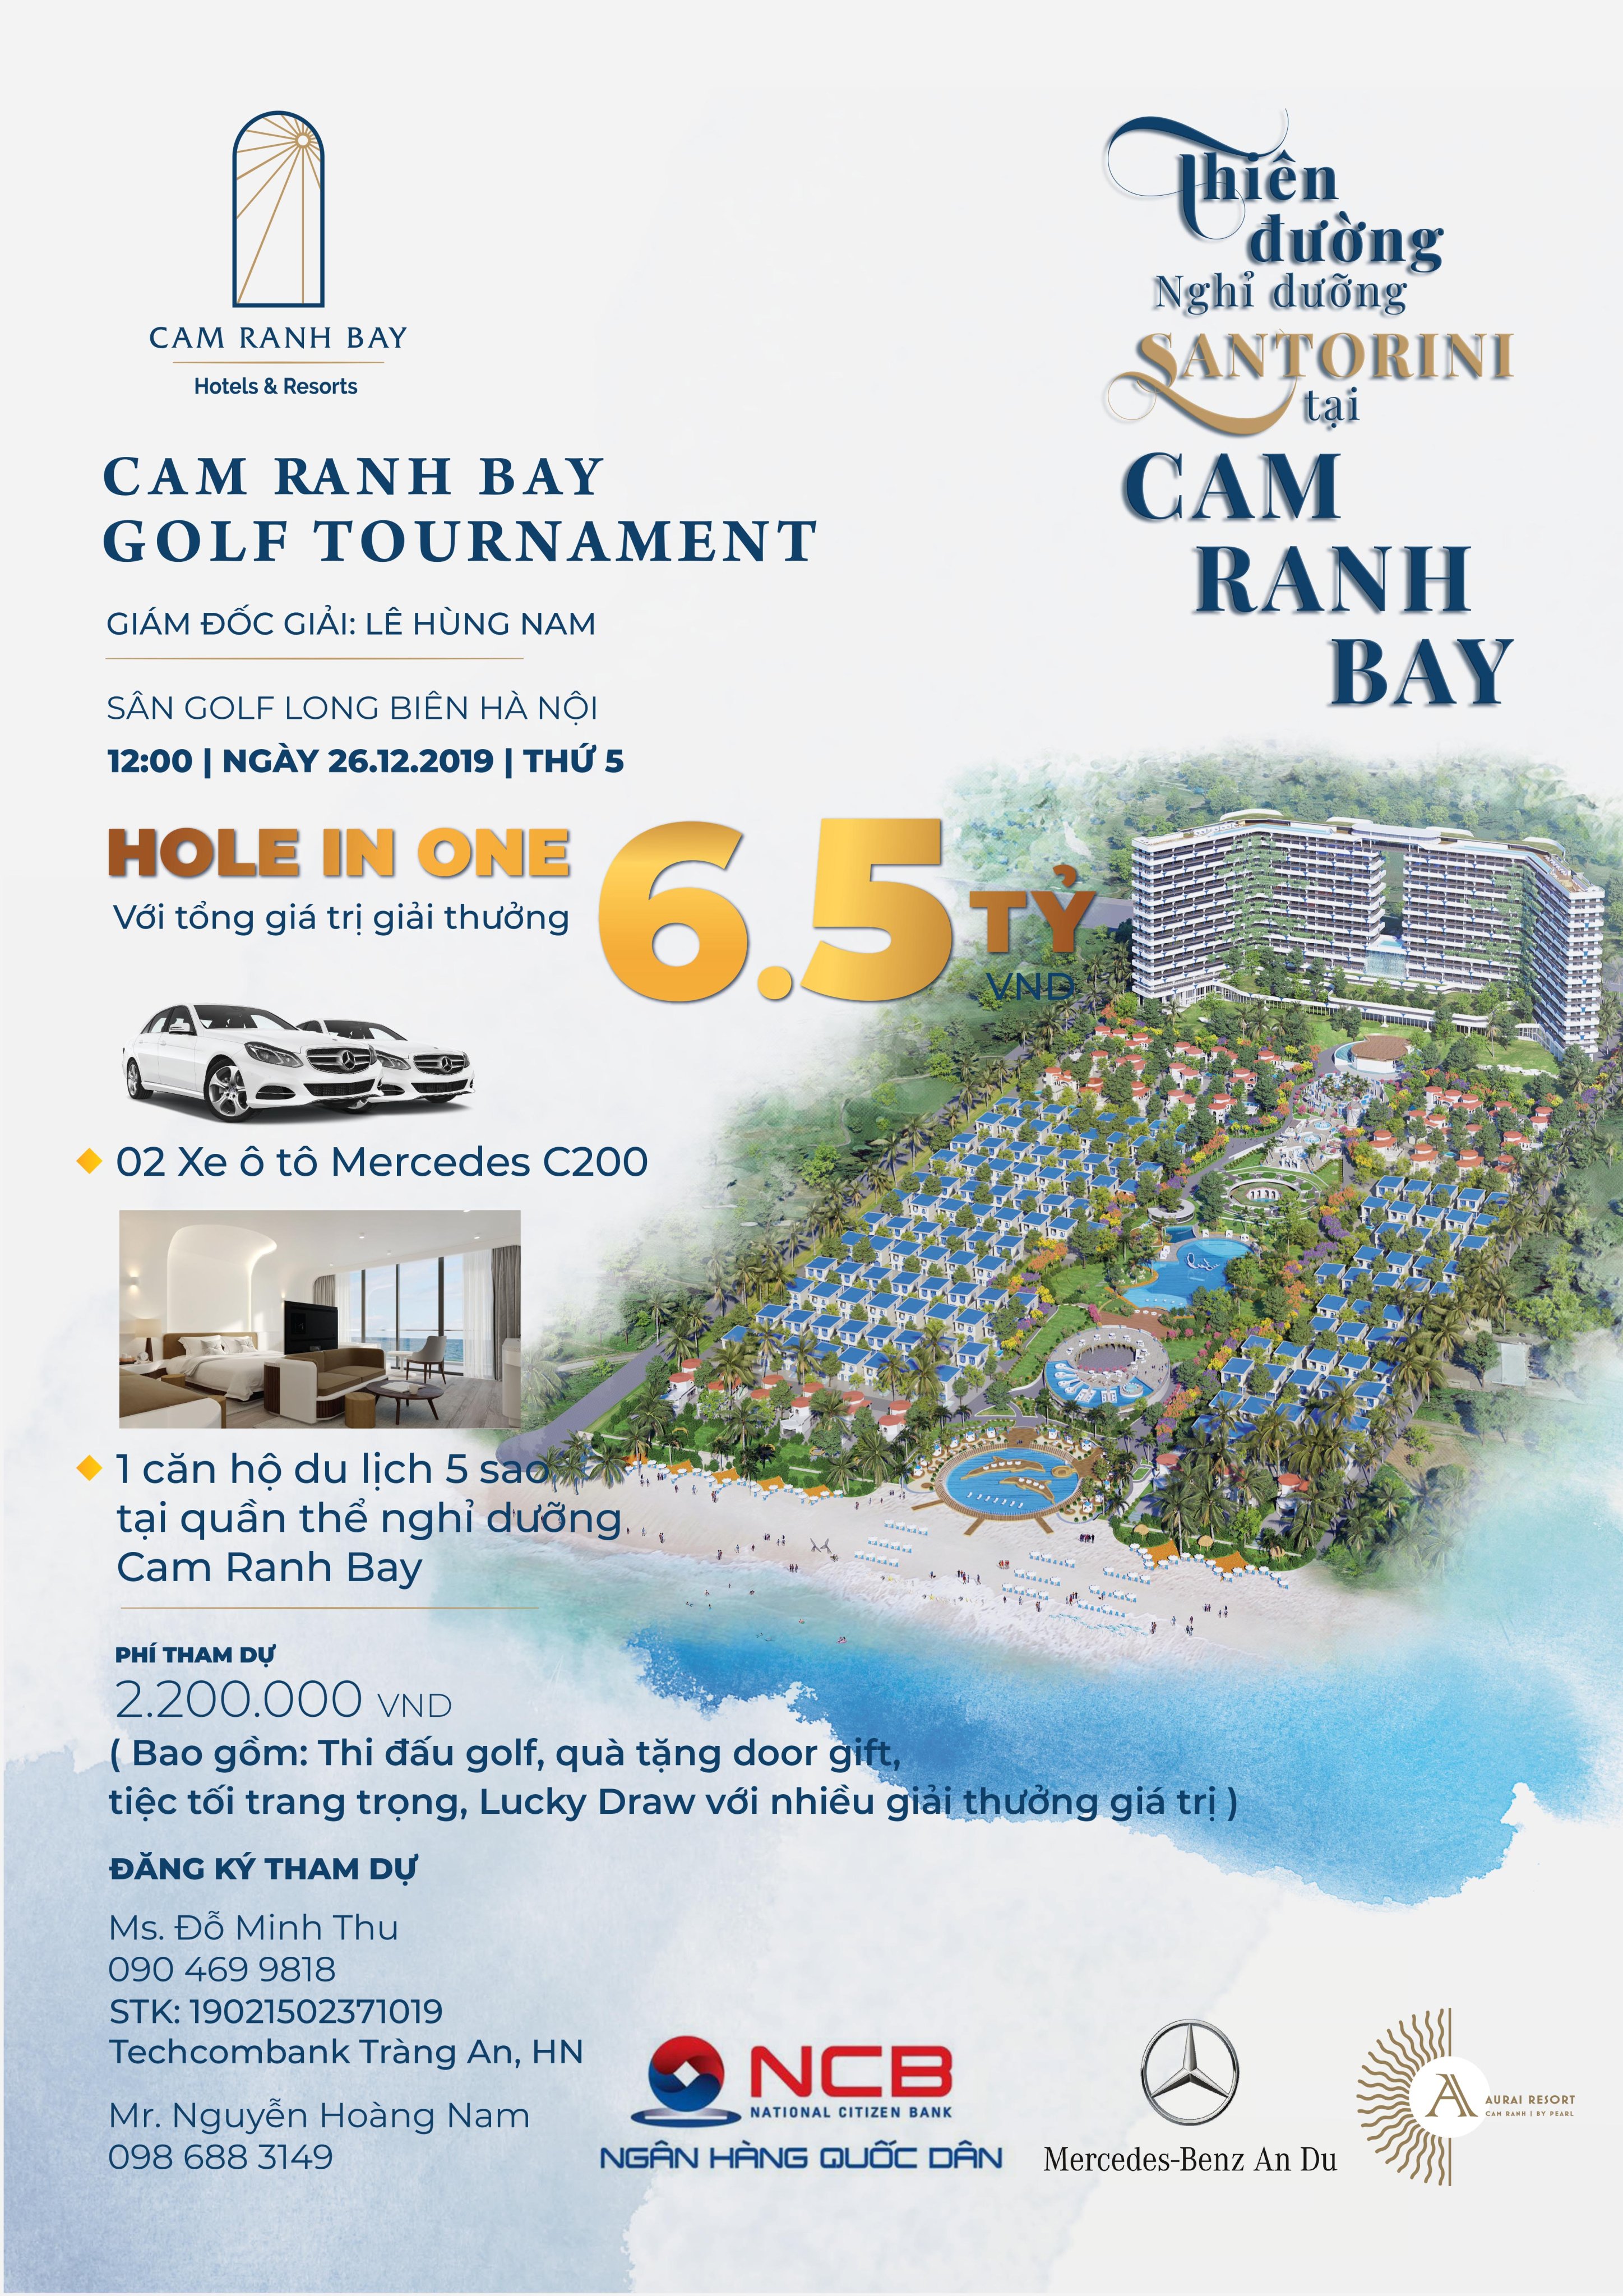 Cơ hội nhận giải thưởng căn hộ 5 sao tại Cam Ranh Bay Golf Tournament